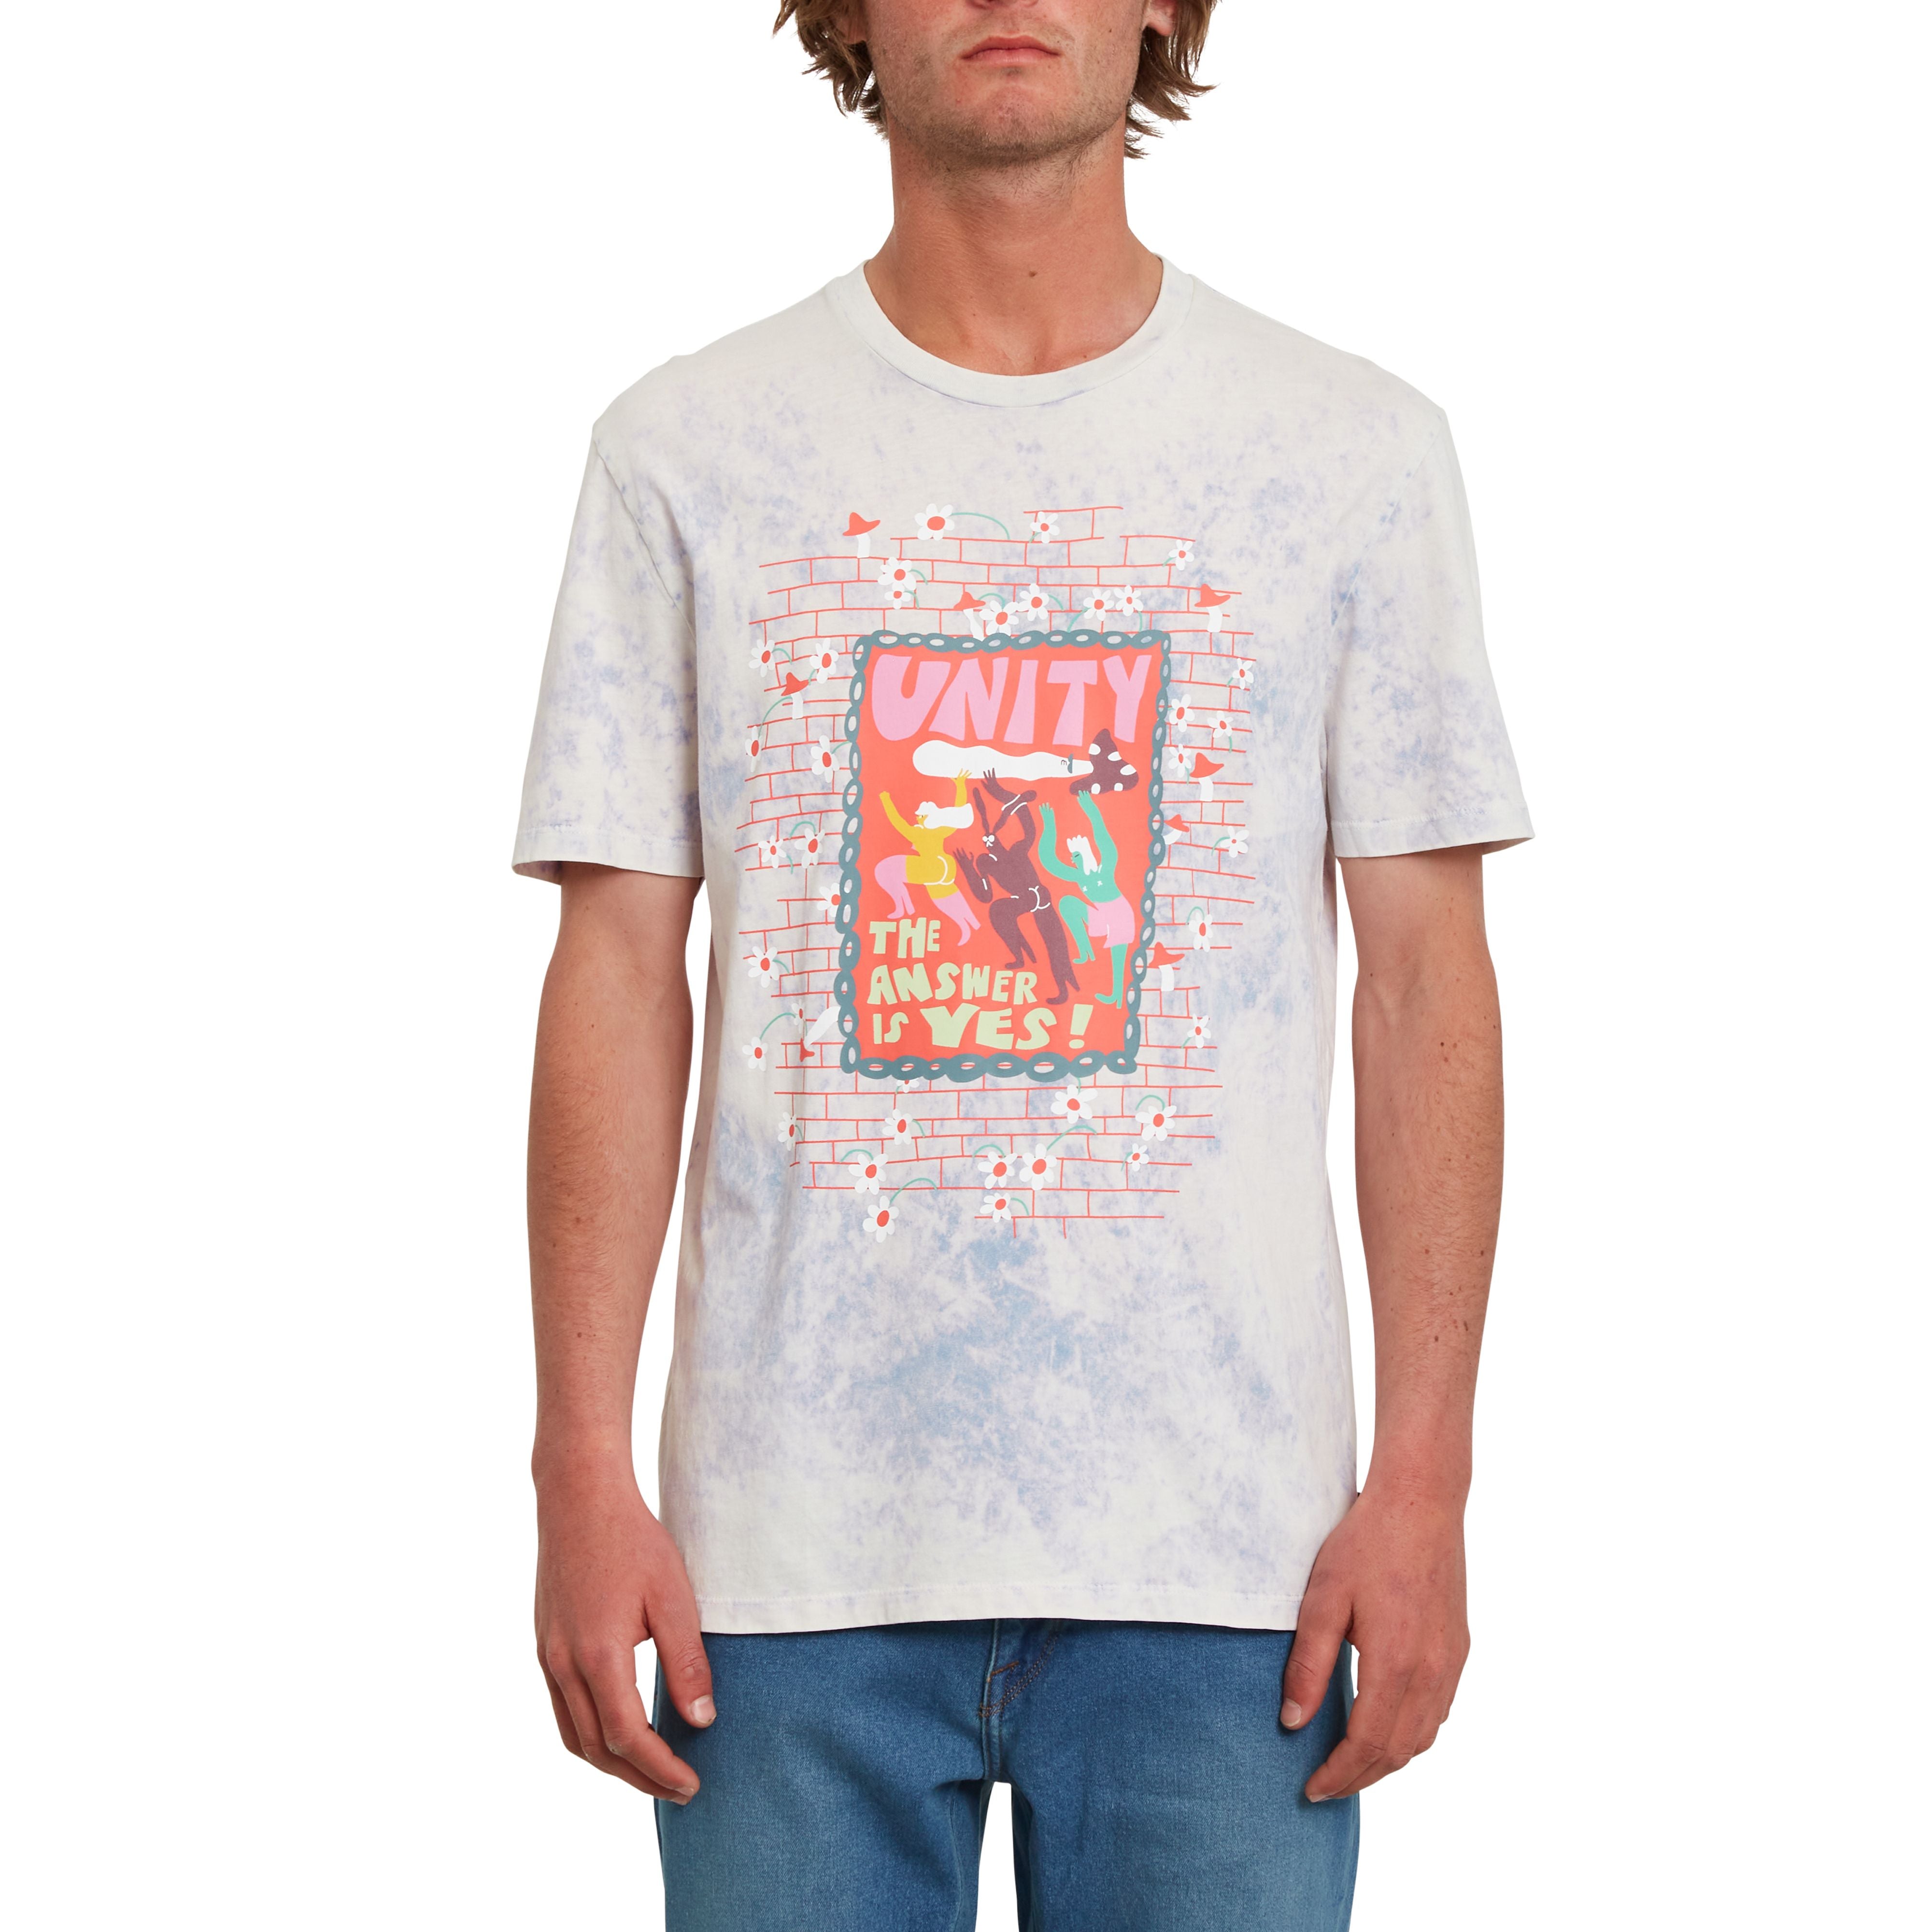 Volcom T-Shirt mit Siebdruck Design Unity vom Künstler Eagle Zvirblyte.